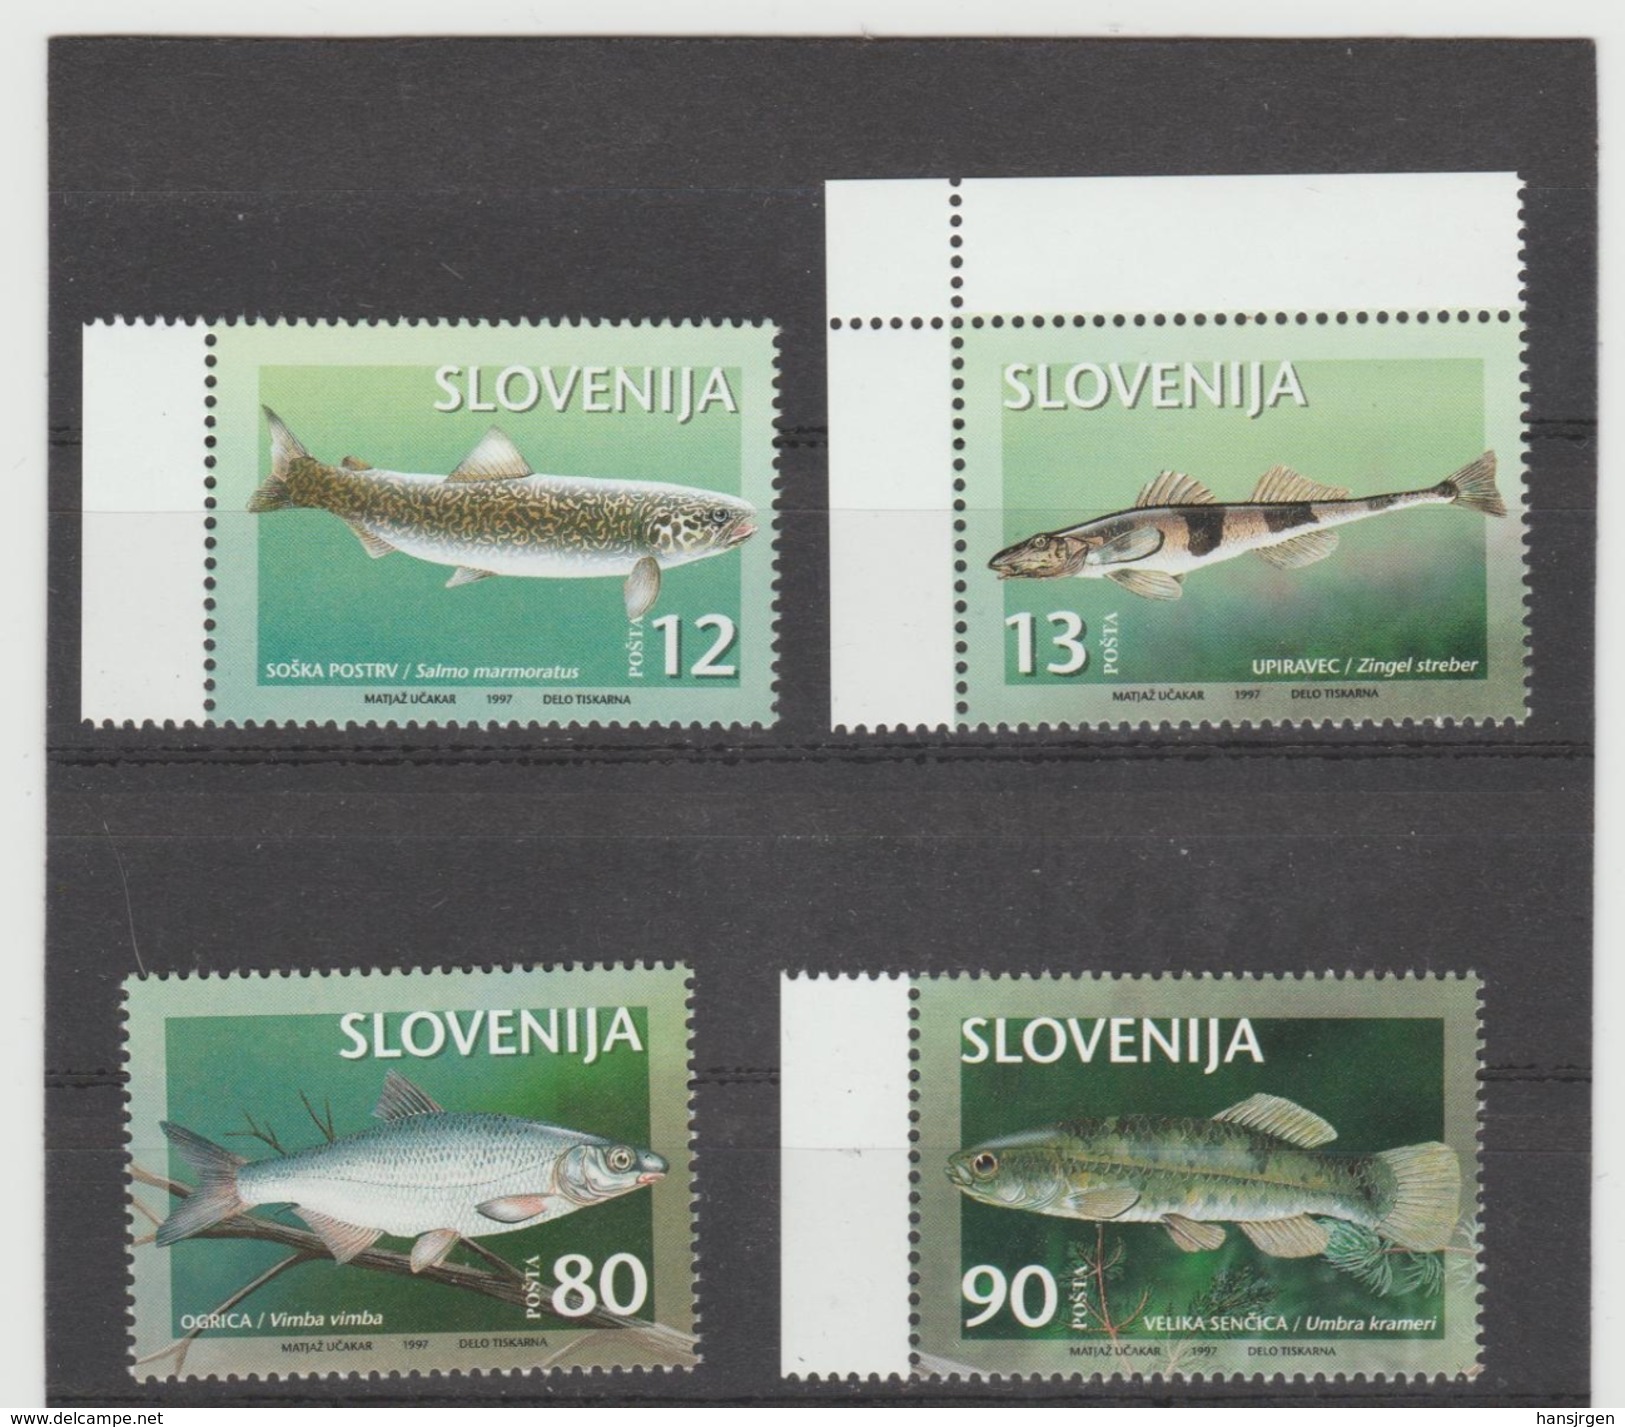 NEU741  SLOWENIEN / SLOVENIJA  1997 MICHL  178/81  Postfrisch SIHE ABBILDUNG - Slowenien